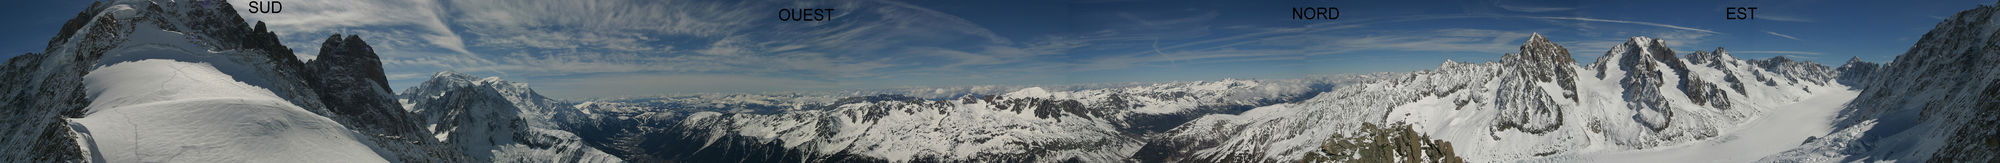 360°-Panorama von der Aiguille des Grands Montets